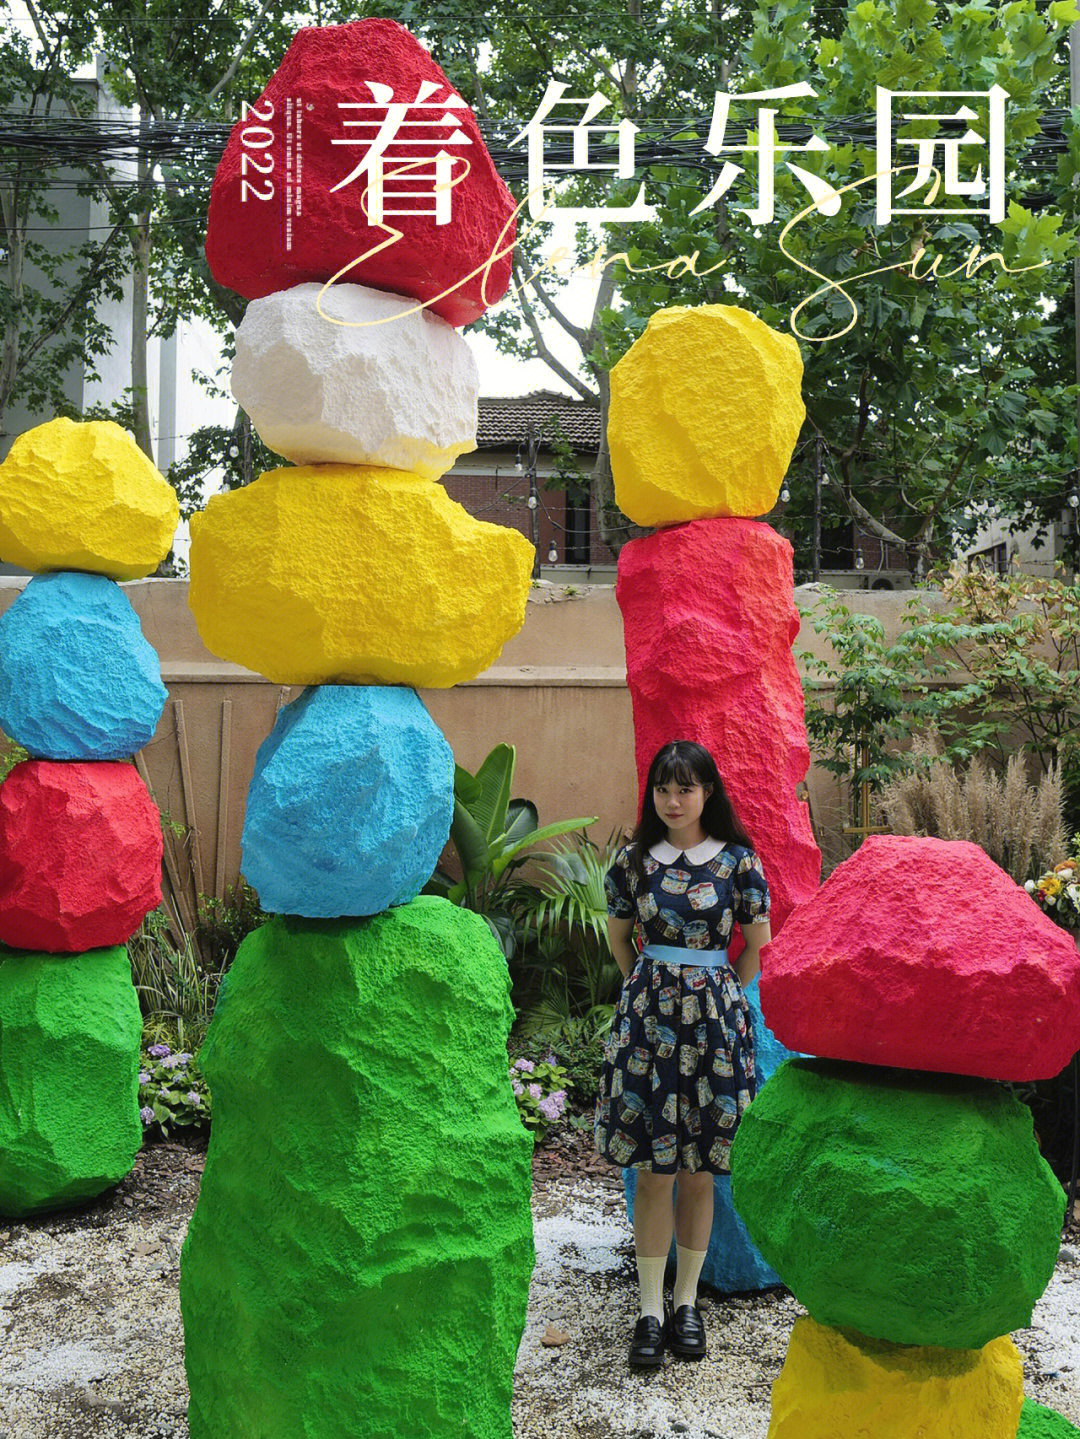 上海新展小小乐园里的彩色石阵